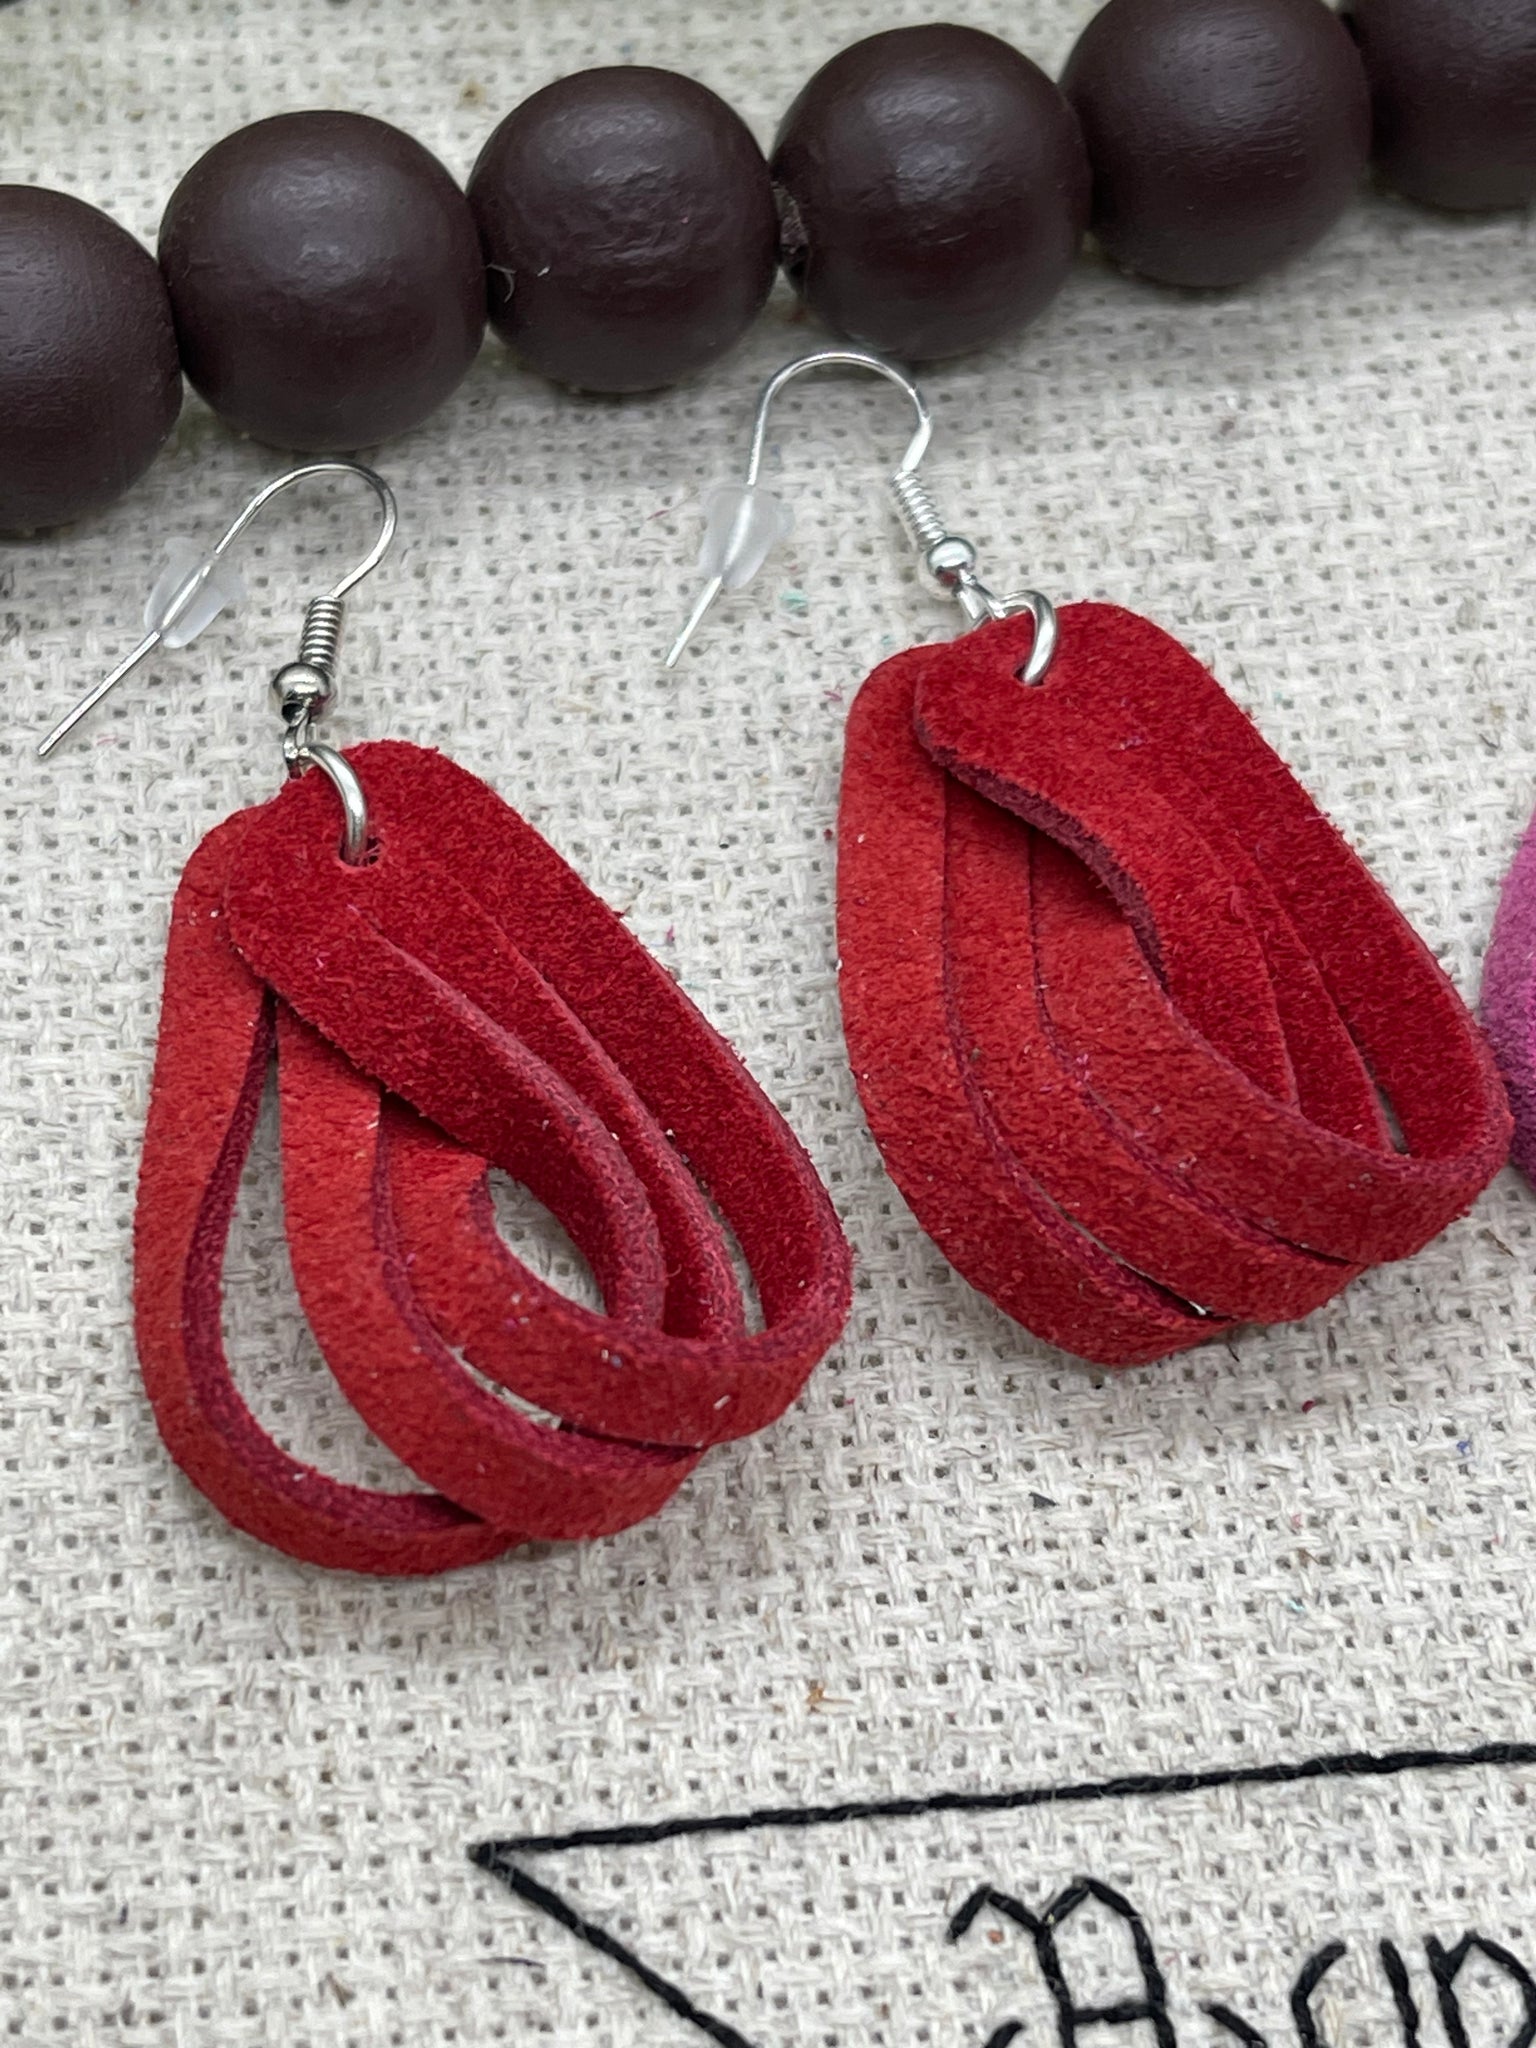 Red and Dark Pink Twisted Loop Earrings